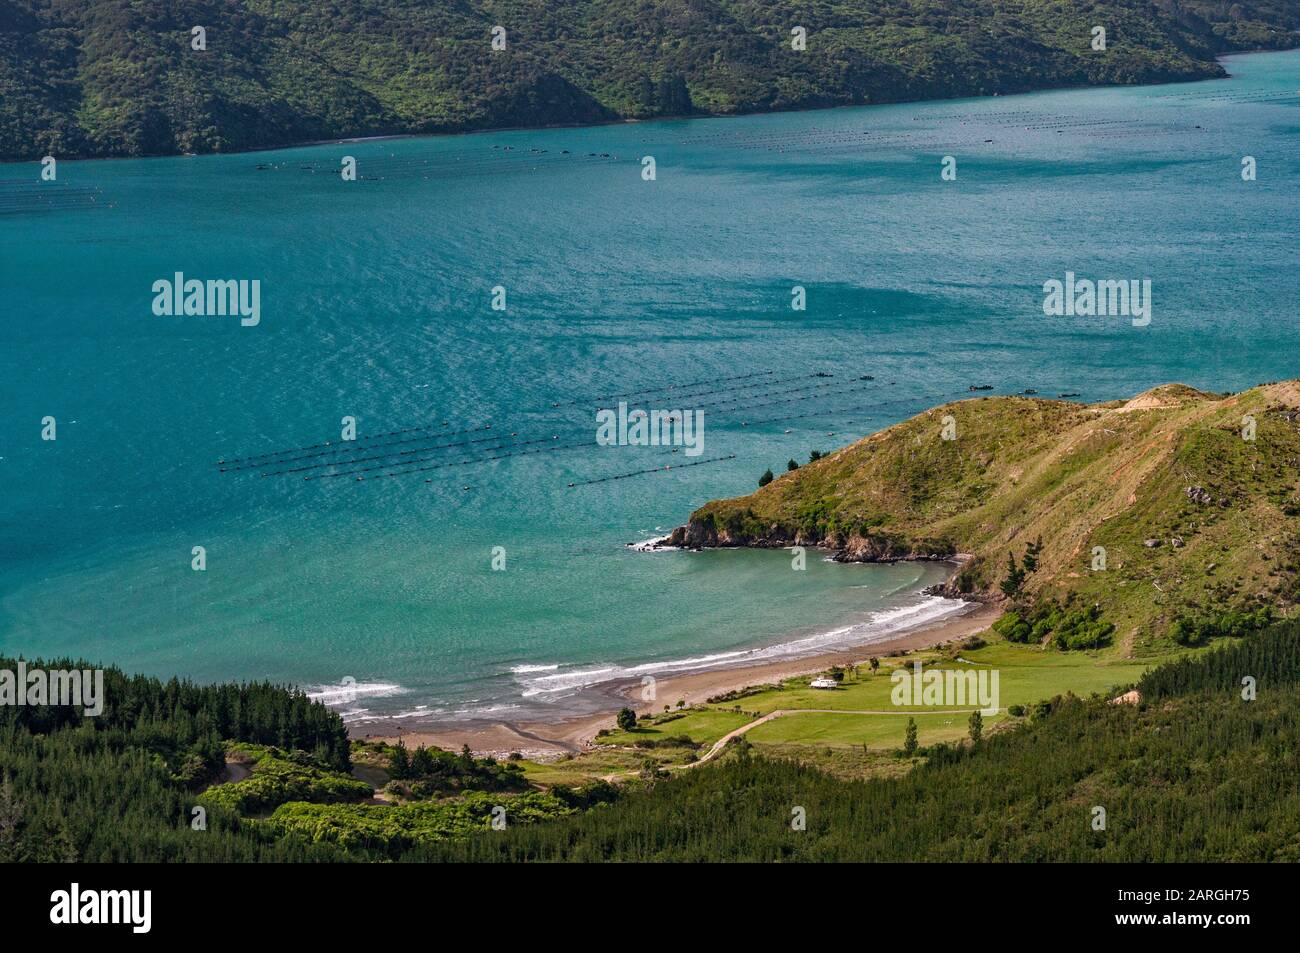 Fattoria di mitili a Squally Cove, vista da Croisilles French Pass Road, vicino al villaggio di Okiwi Bay, Marlborough Region, South Island, Nuova Zelanda Foto Stock